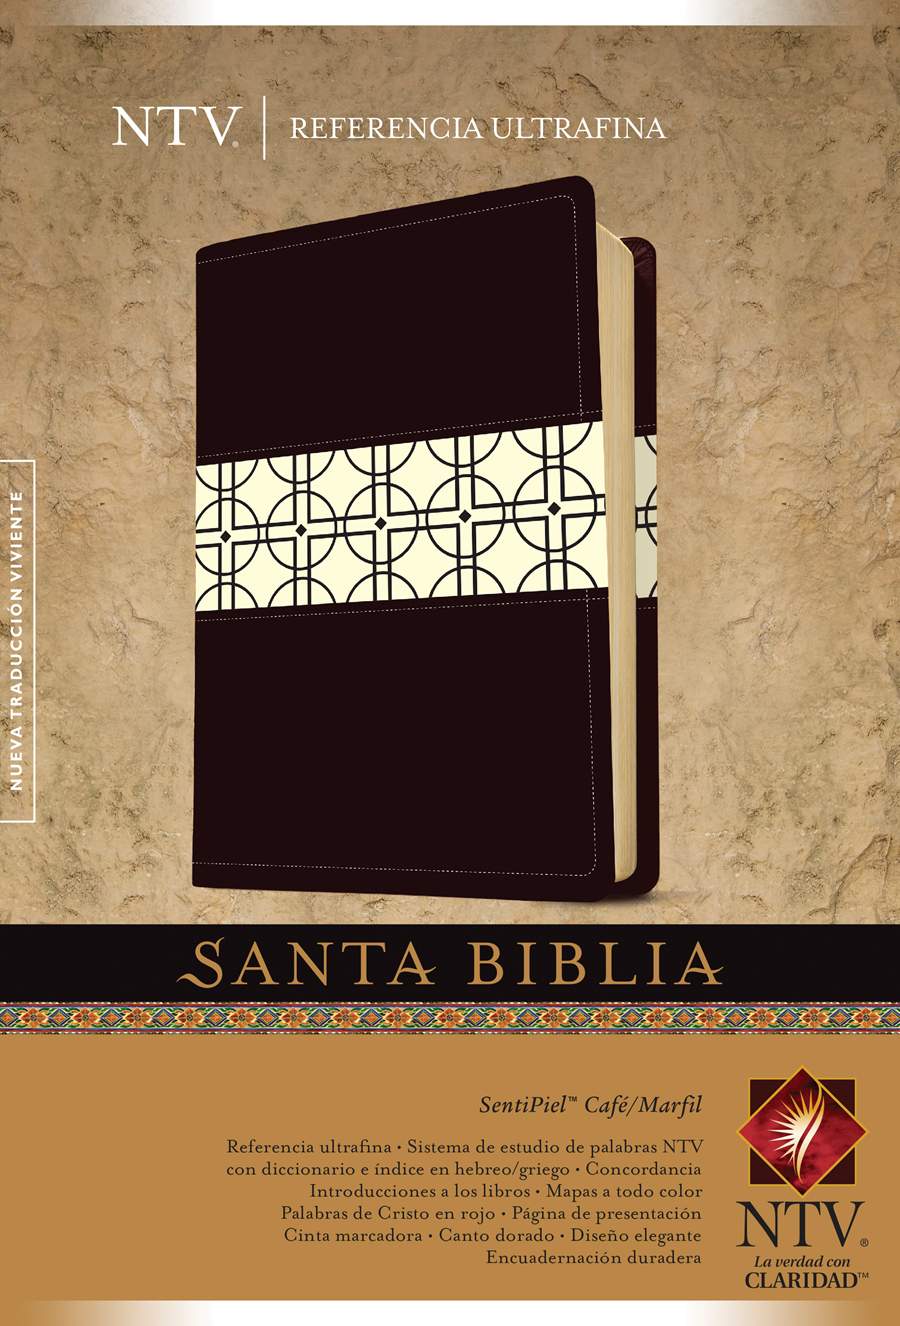 Biblia NTV Edición ref ultrafina café/marfil - Librería Libros Cristianos - Biblia